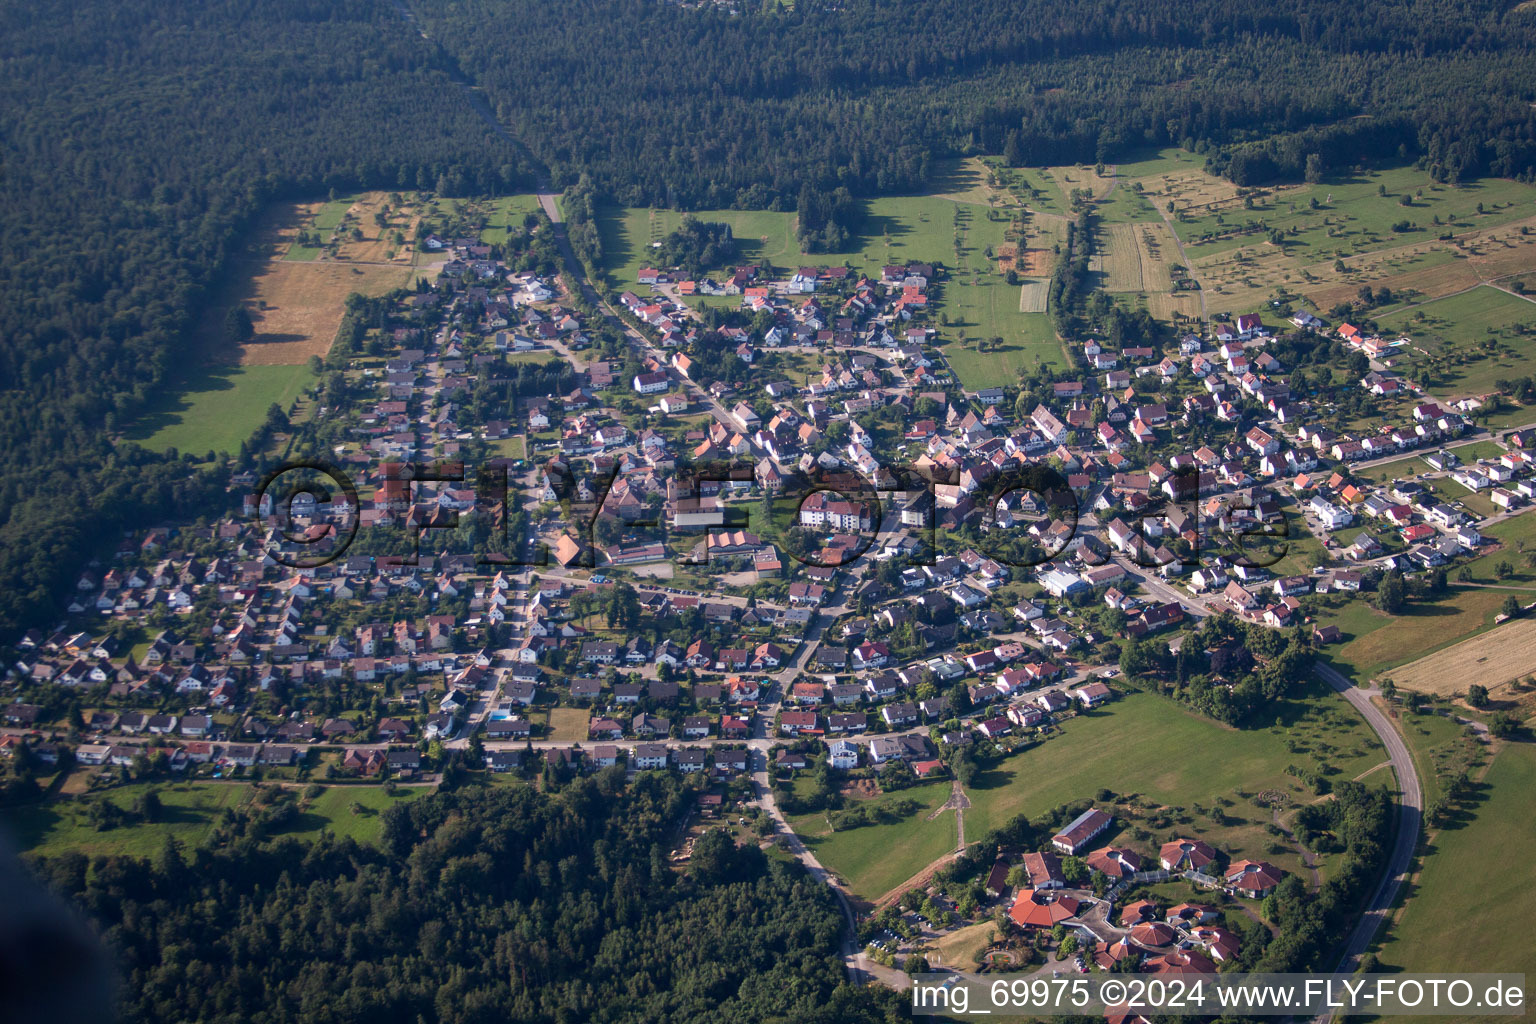 Vue aérienne de Centre de réunion à Hohenwart dans le département Bade-Wurtemberg, Allemagne